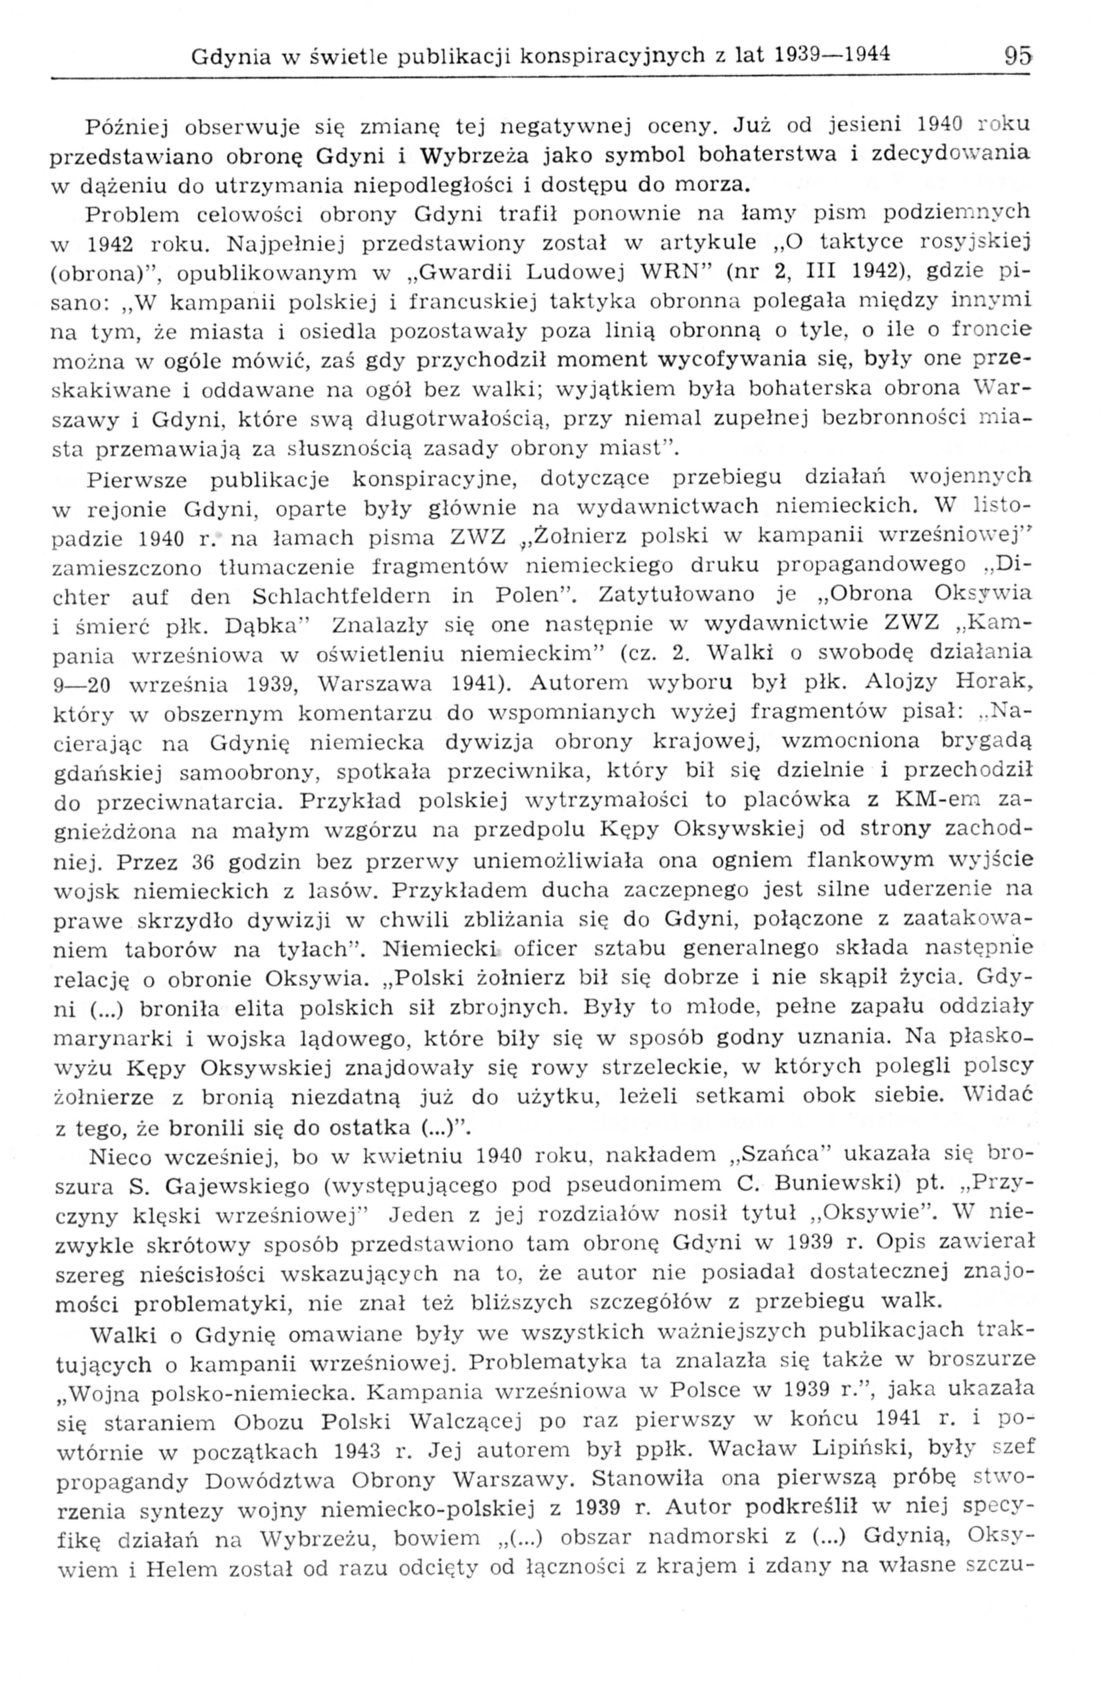 Gdynia w świetle publikacji konspiracyjnych z lat 1939-1944